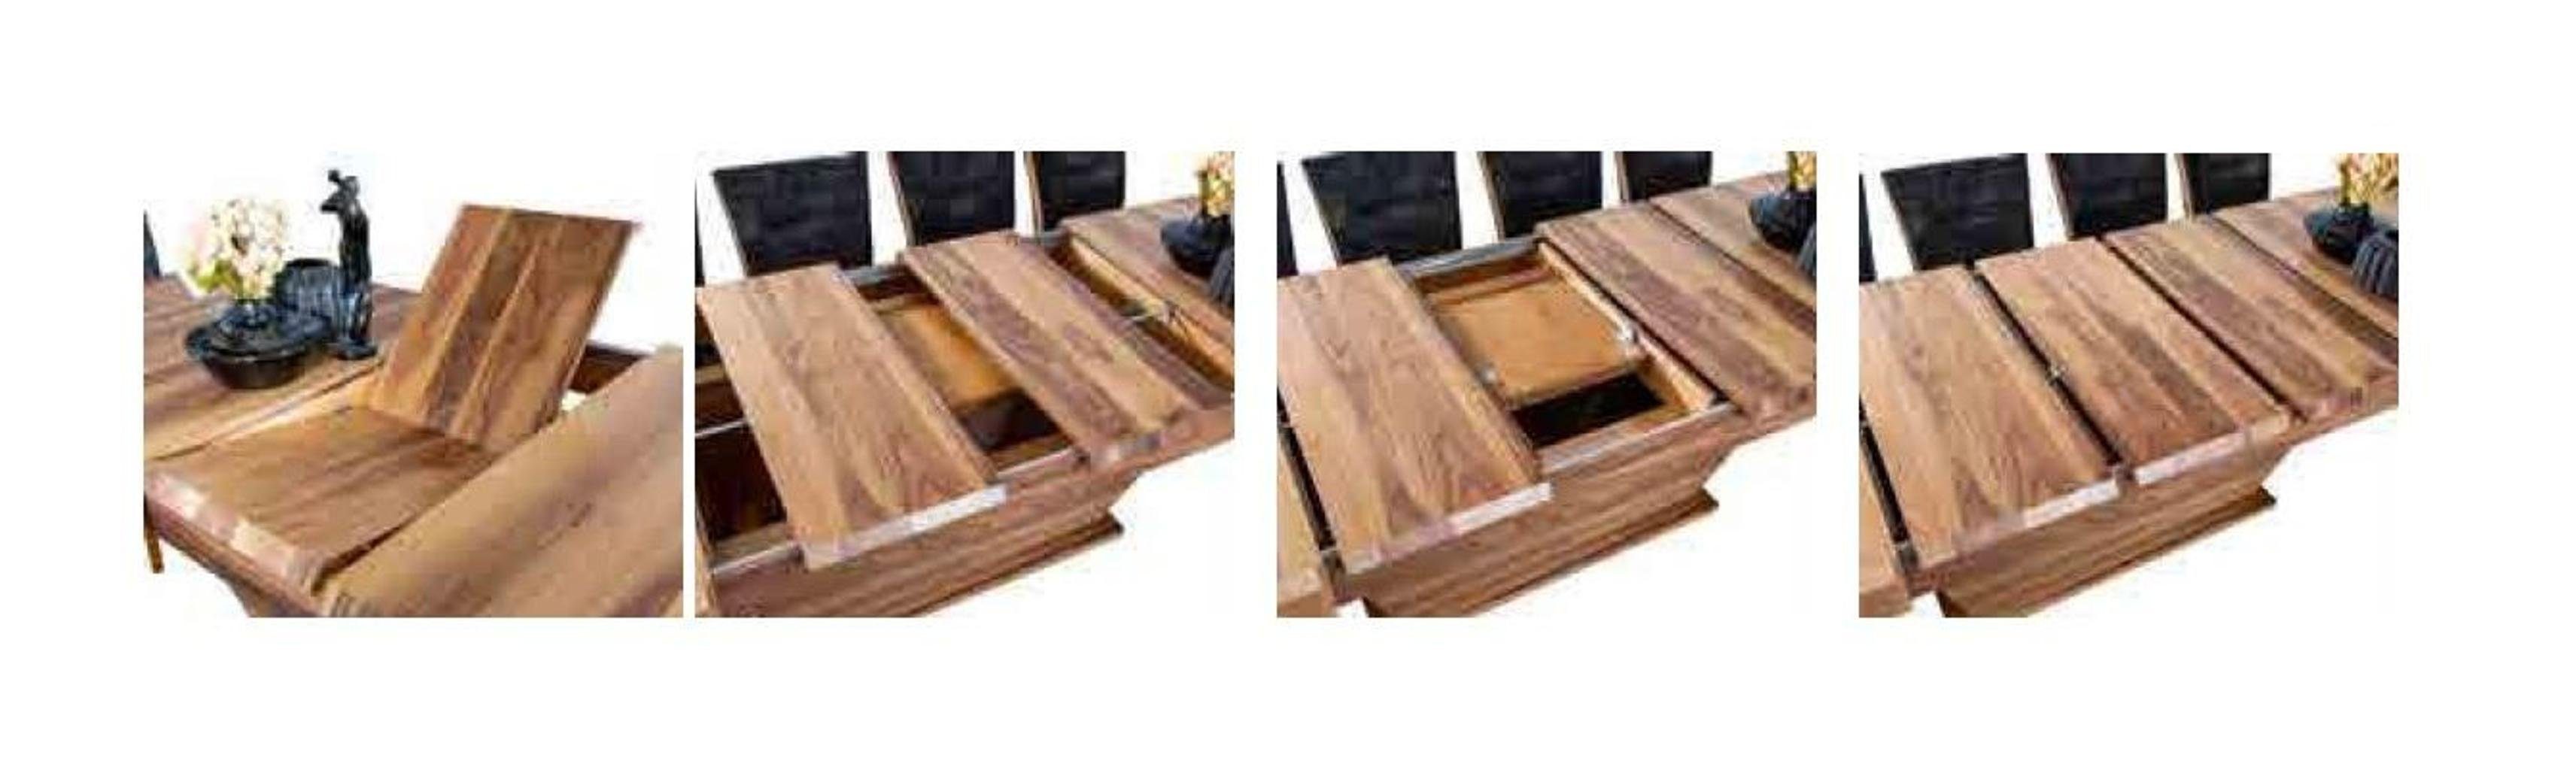 JVmoebel Esstisch, Holz Möbel Rechteckig Esstisch Luxus Tisch Tische Esstische Luxus